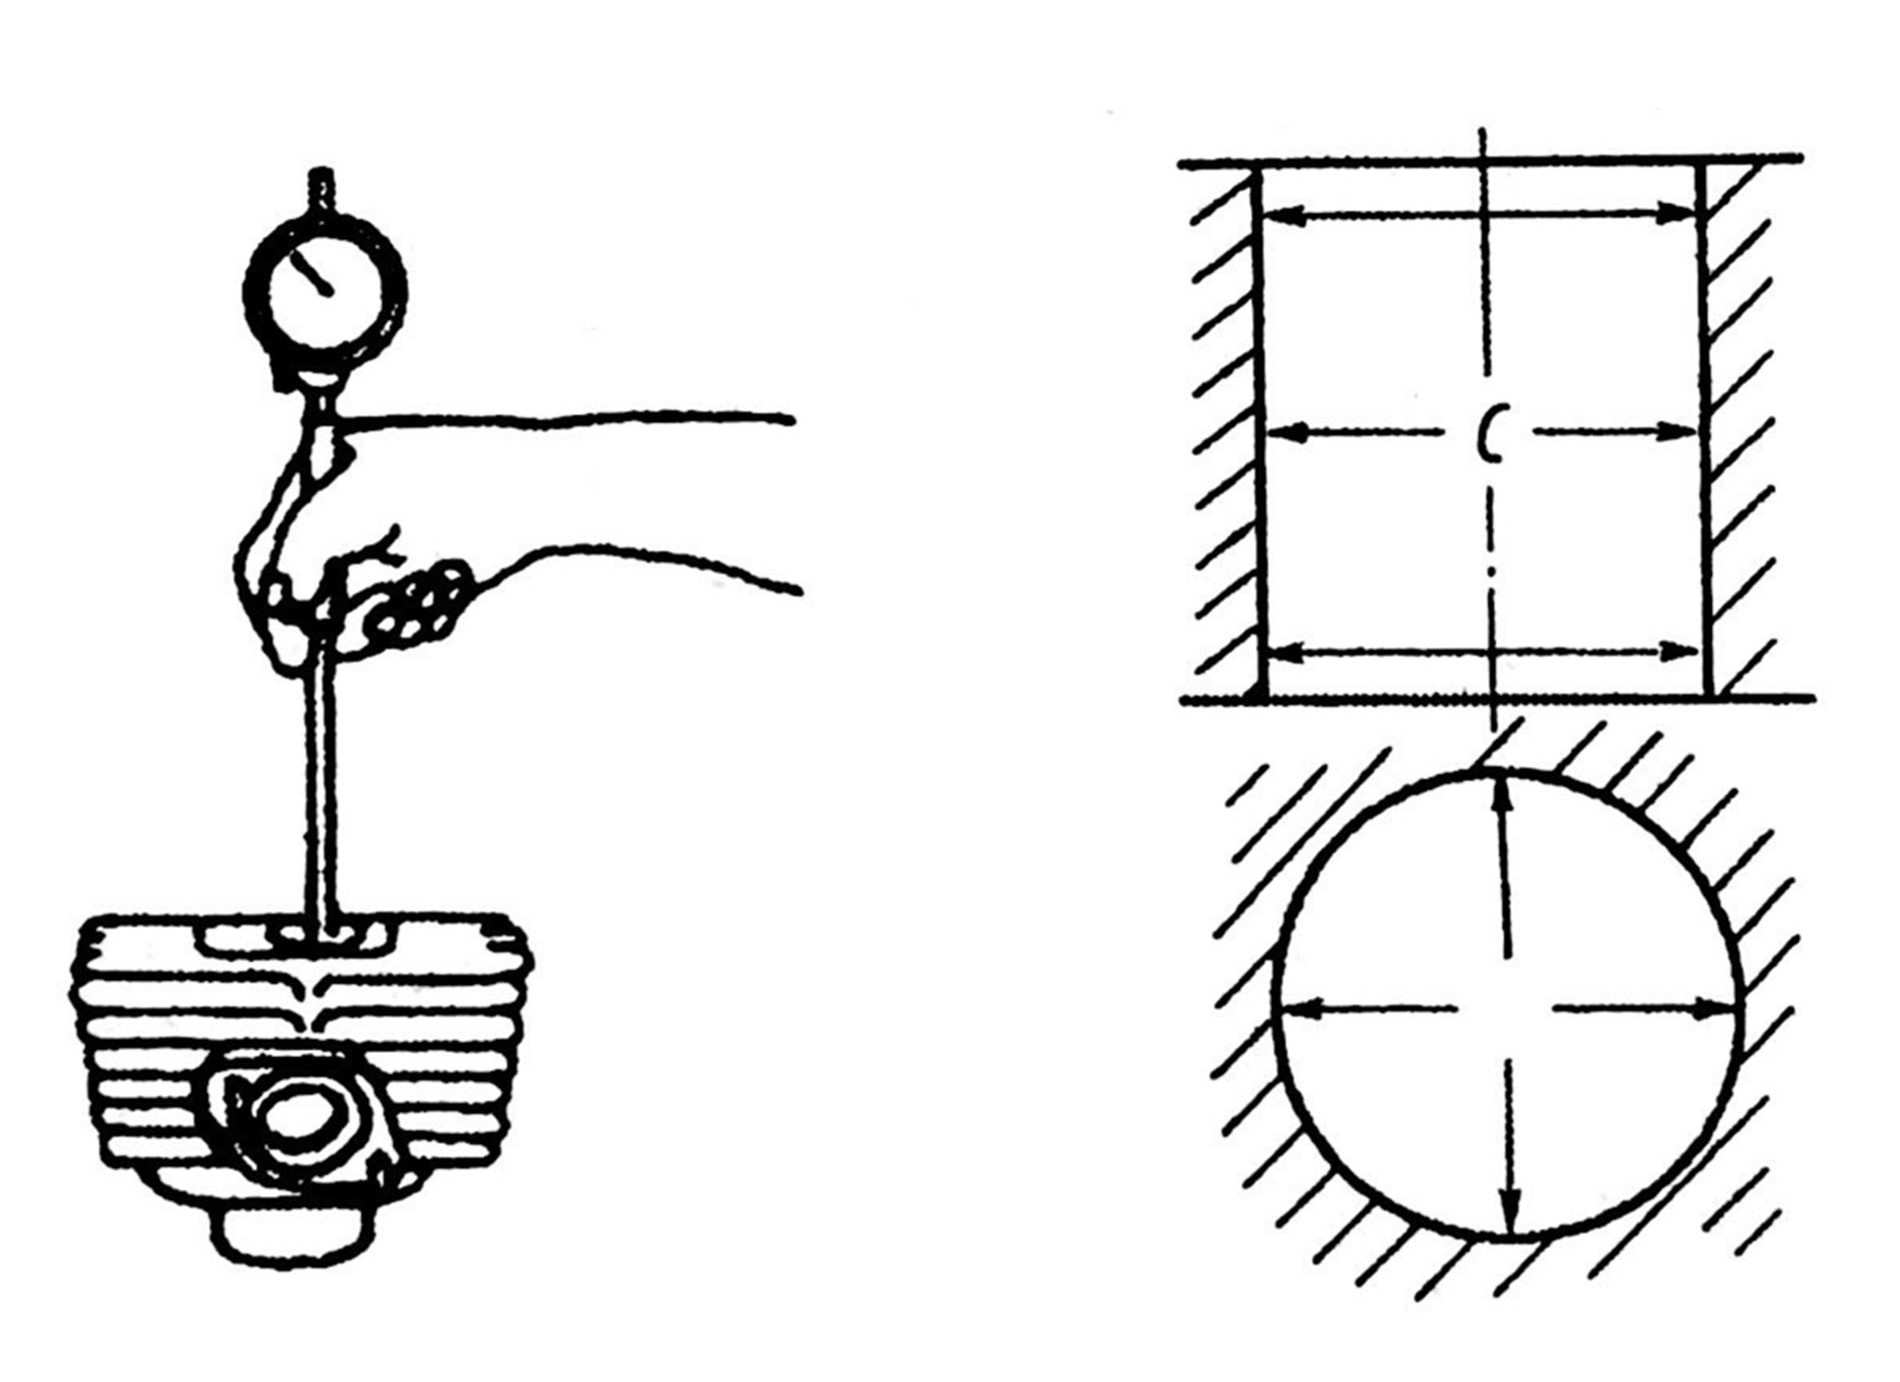 Hình 3-5: Sơ đồ bộ vị kiểm tra nòng (đường kính) xi lanh